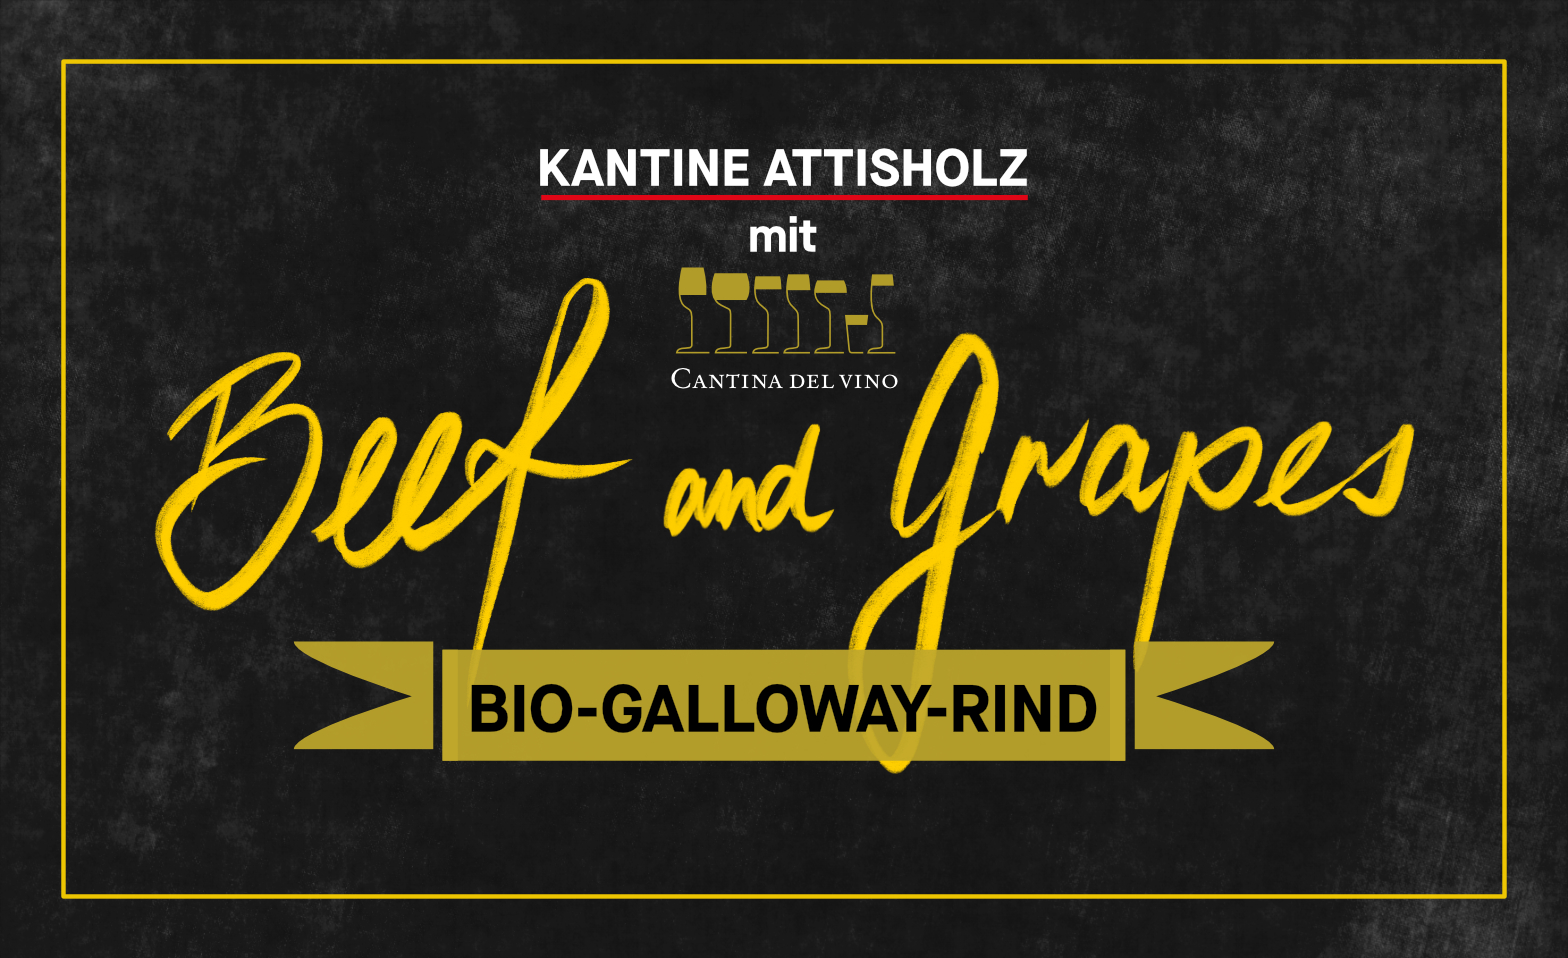 BEEF and GRAPES - Weine aus Sardinien & Bio Galloway Rind KANTINE ATTISHOLZ, Riedholz Billets